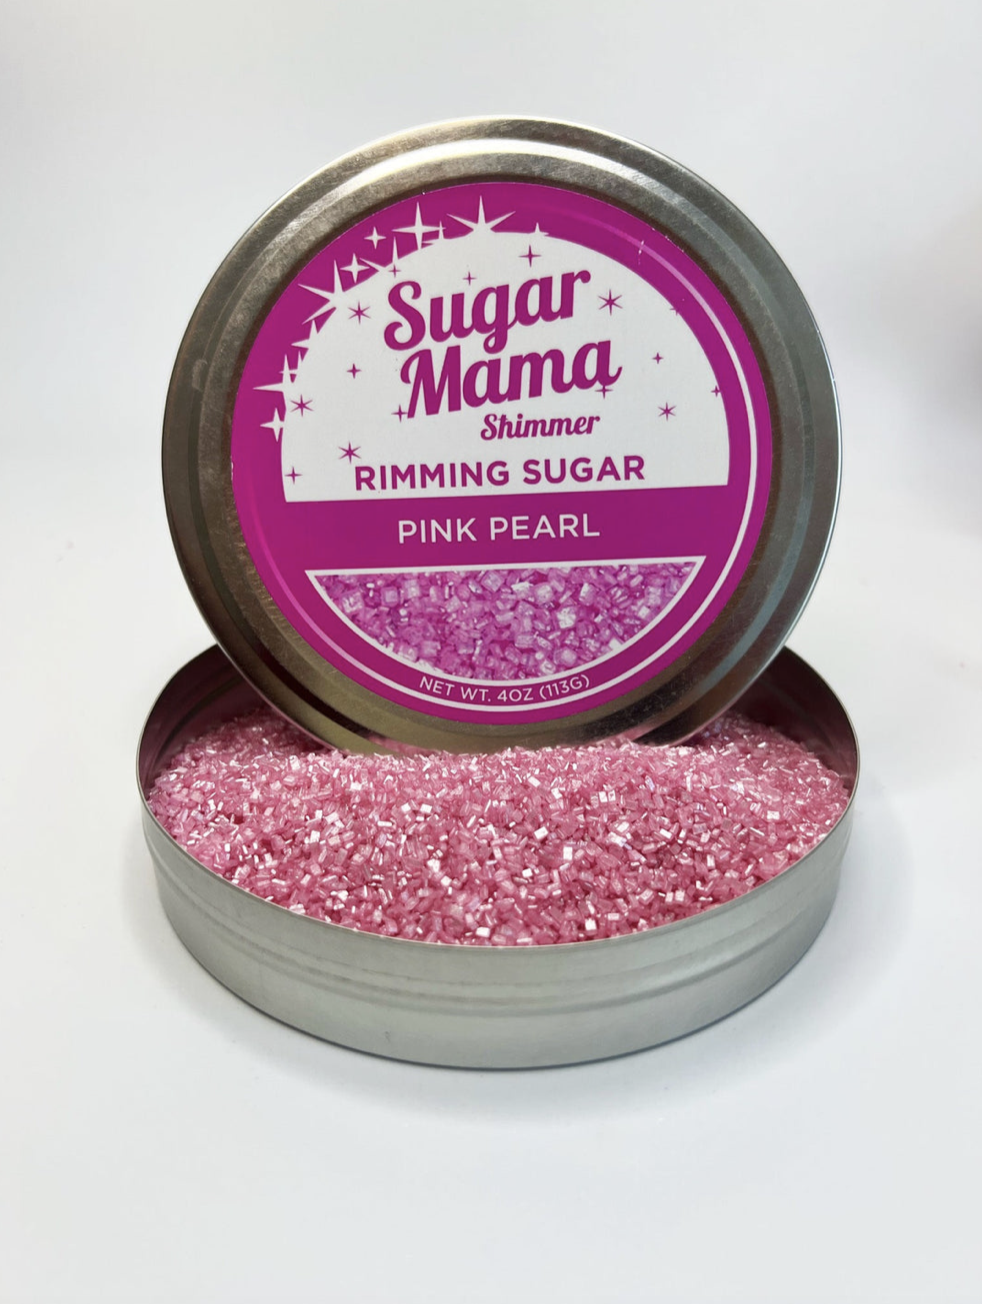 Sugar Mama Shimmer Rimming Sugar